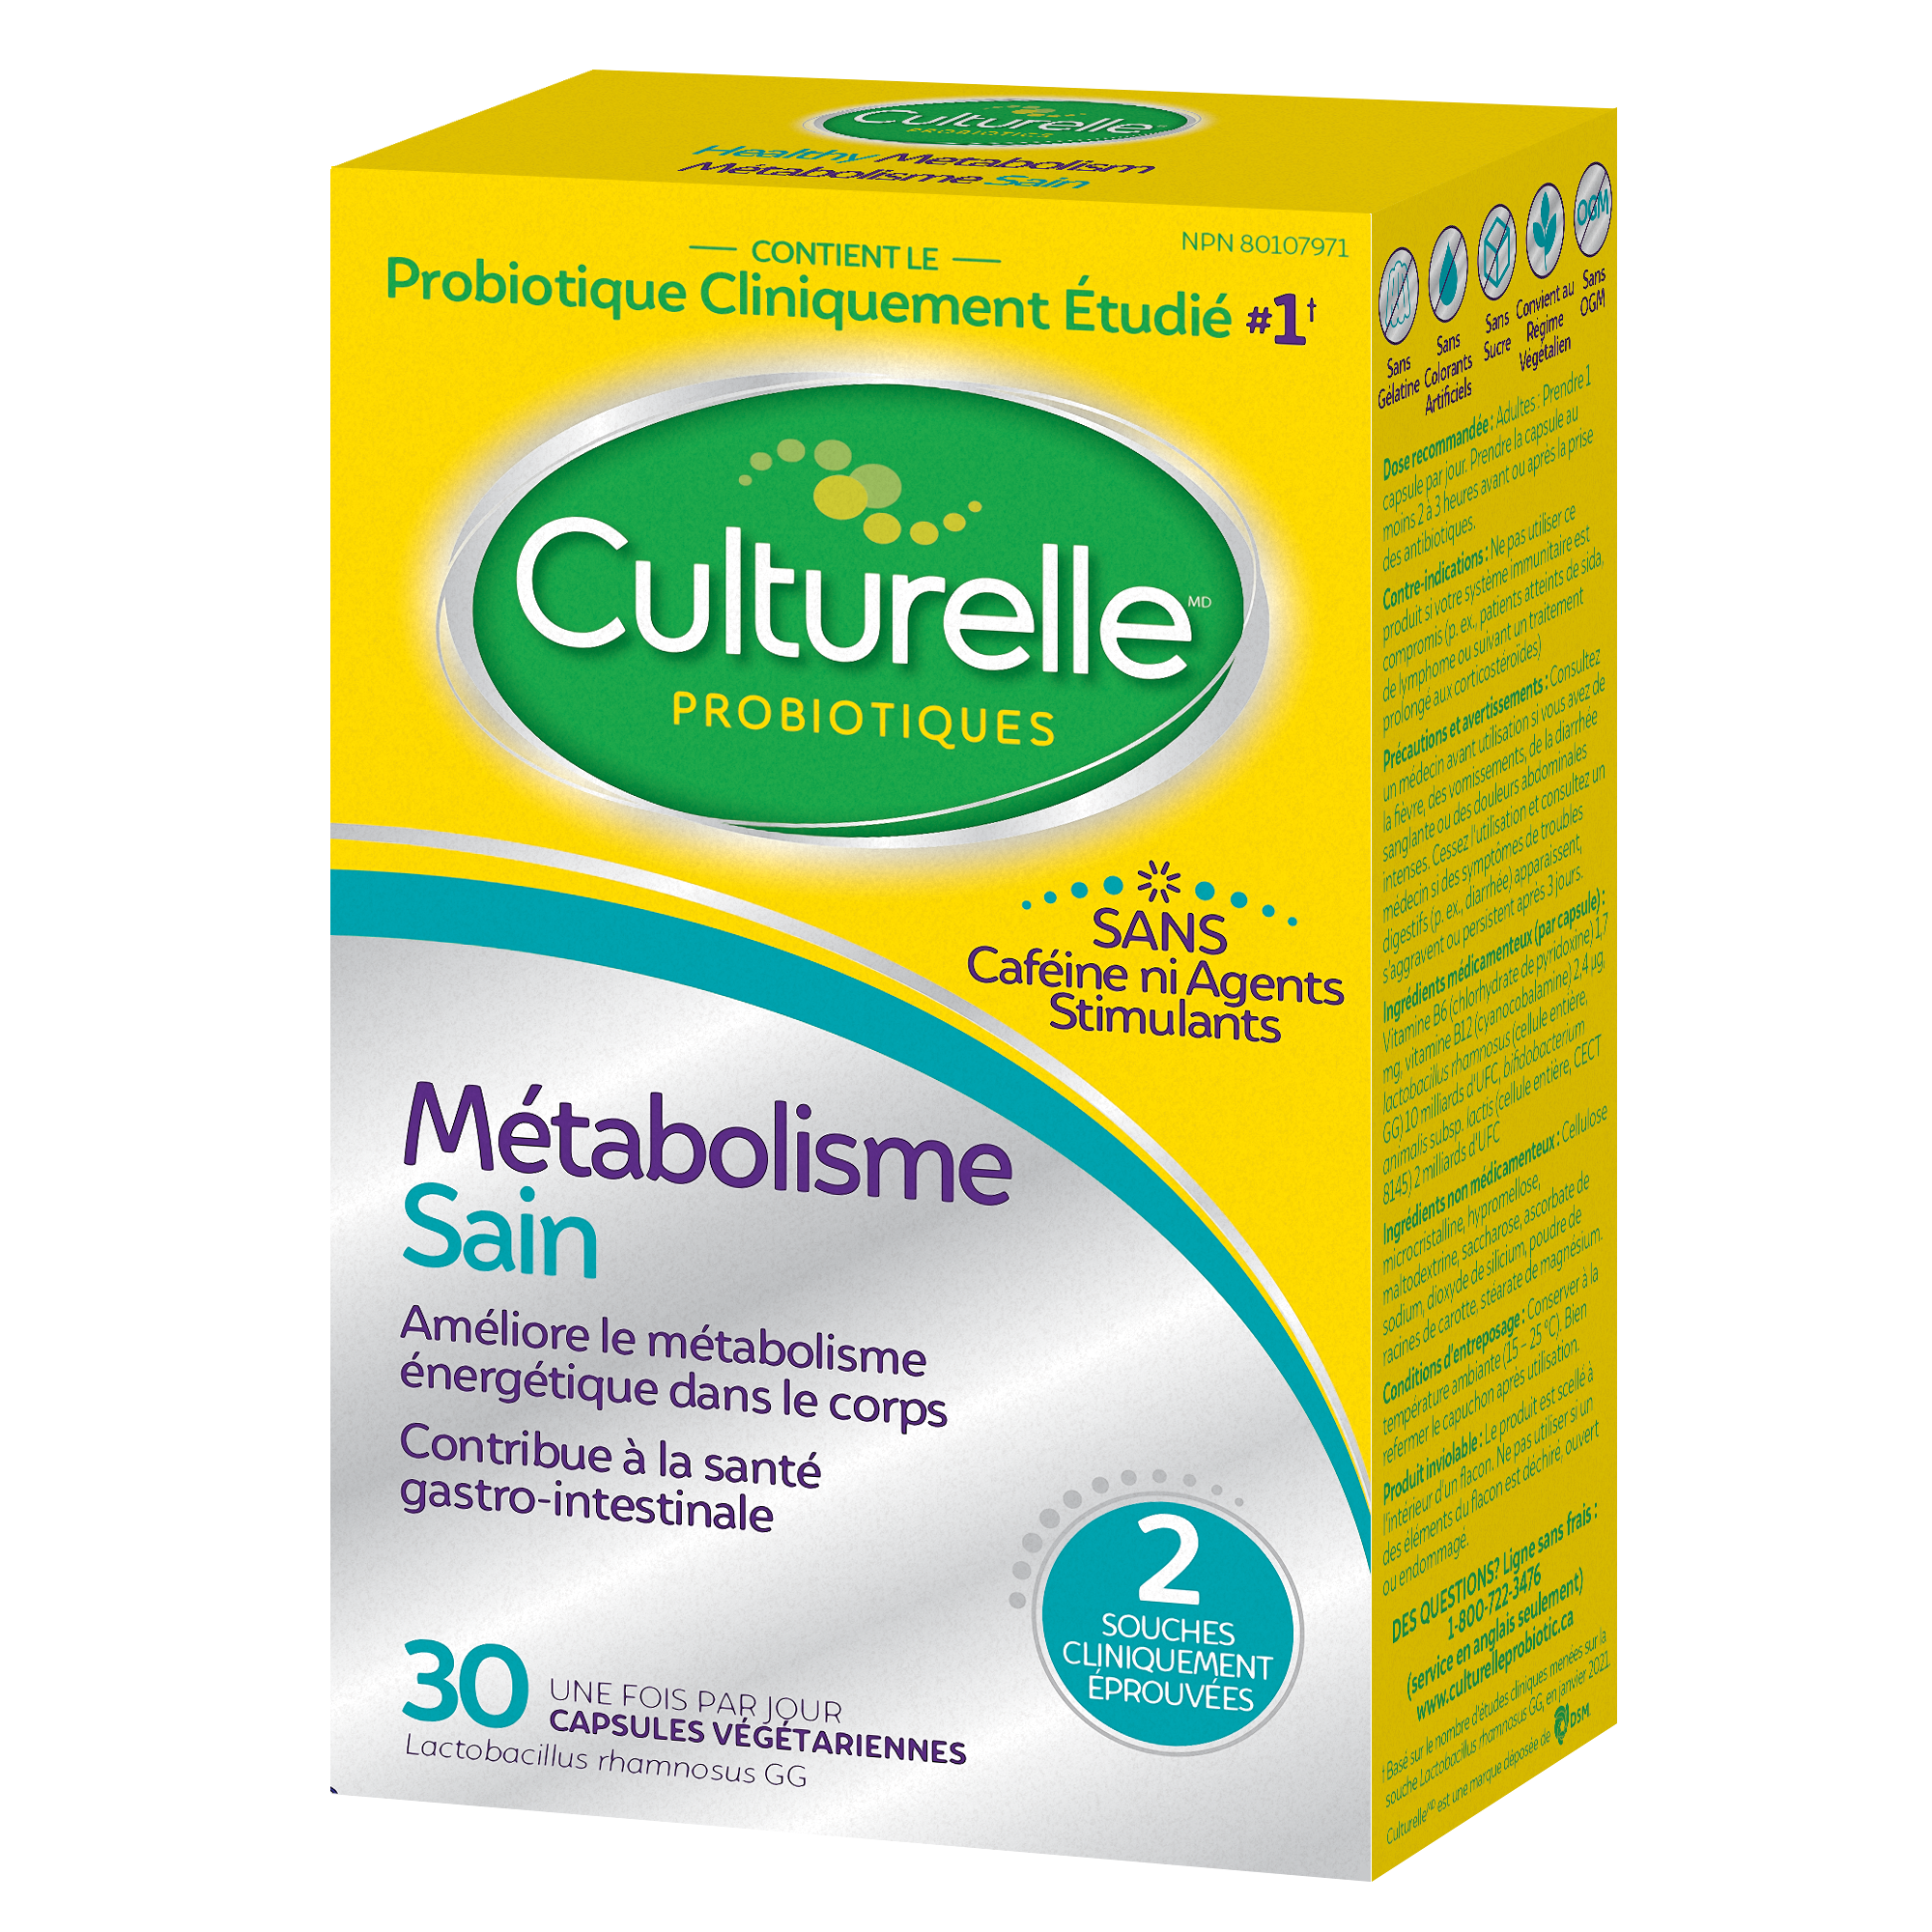 Culturelle Métabolisme + Poids – Côté droit de l’emballage